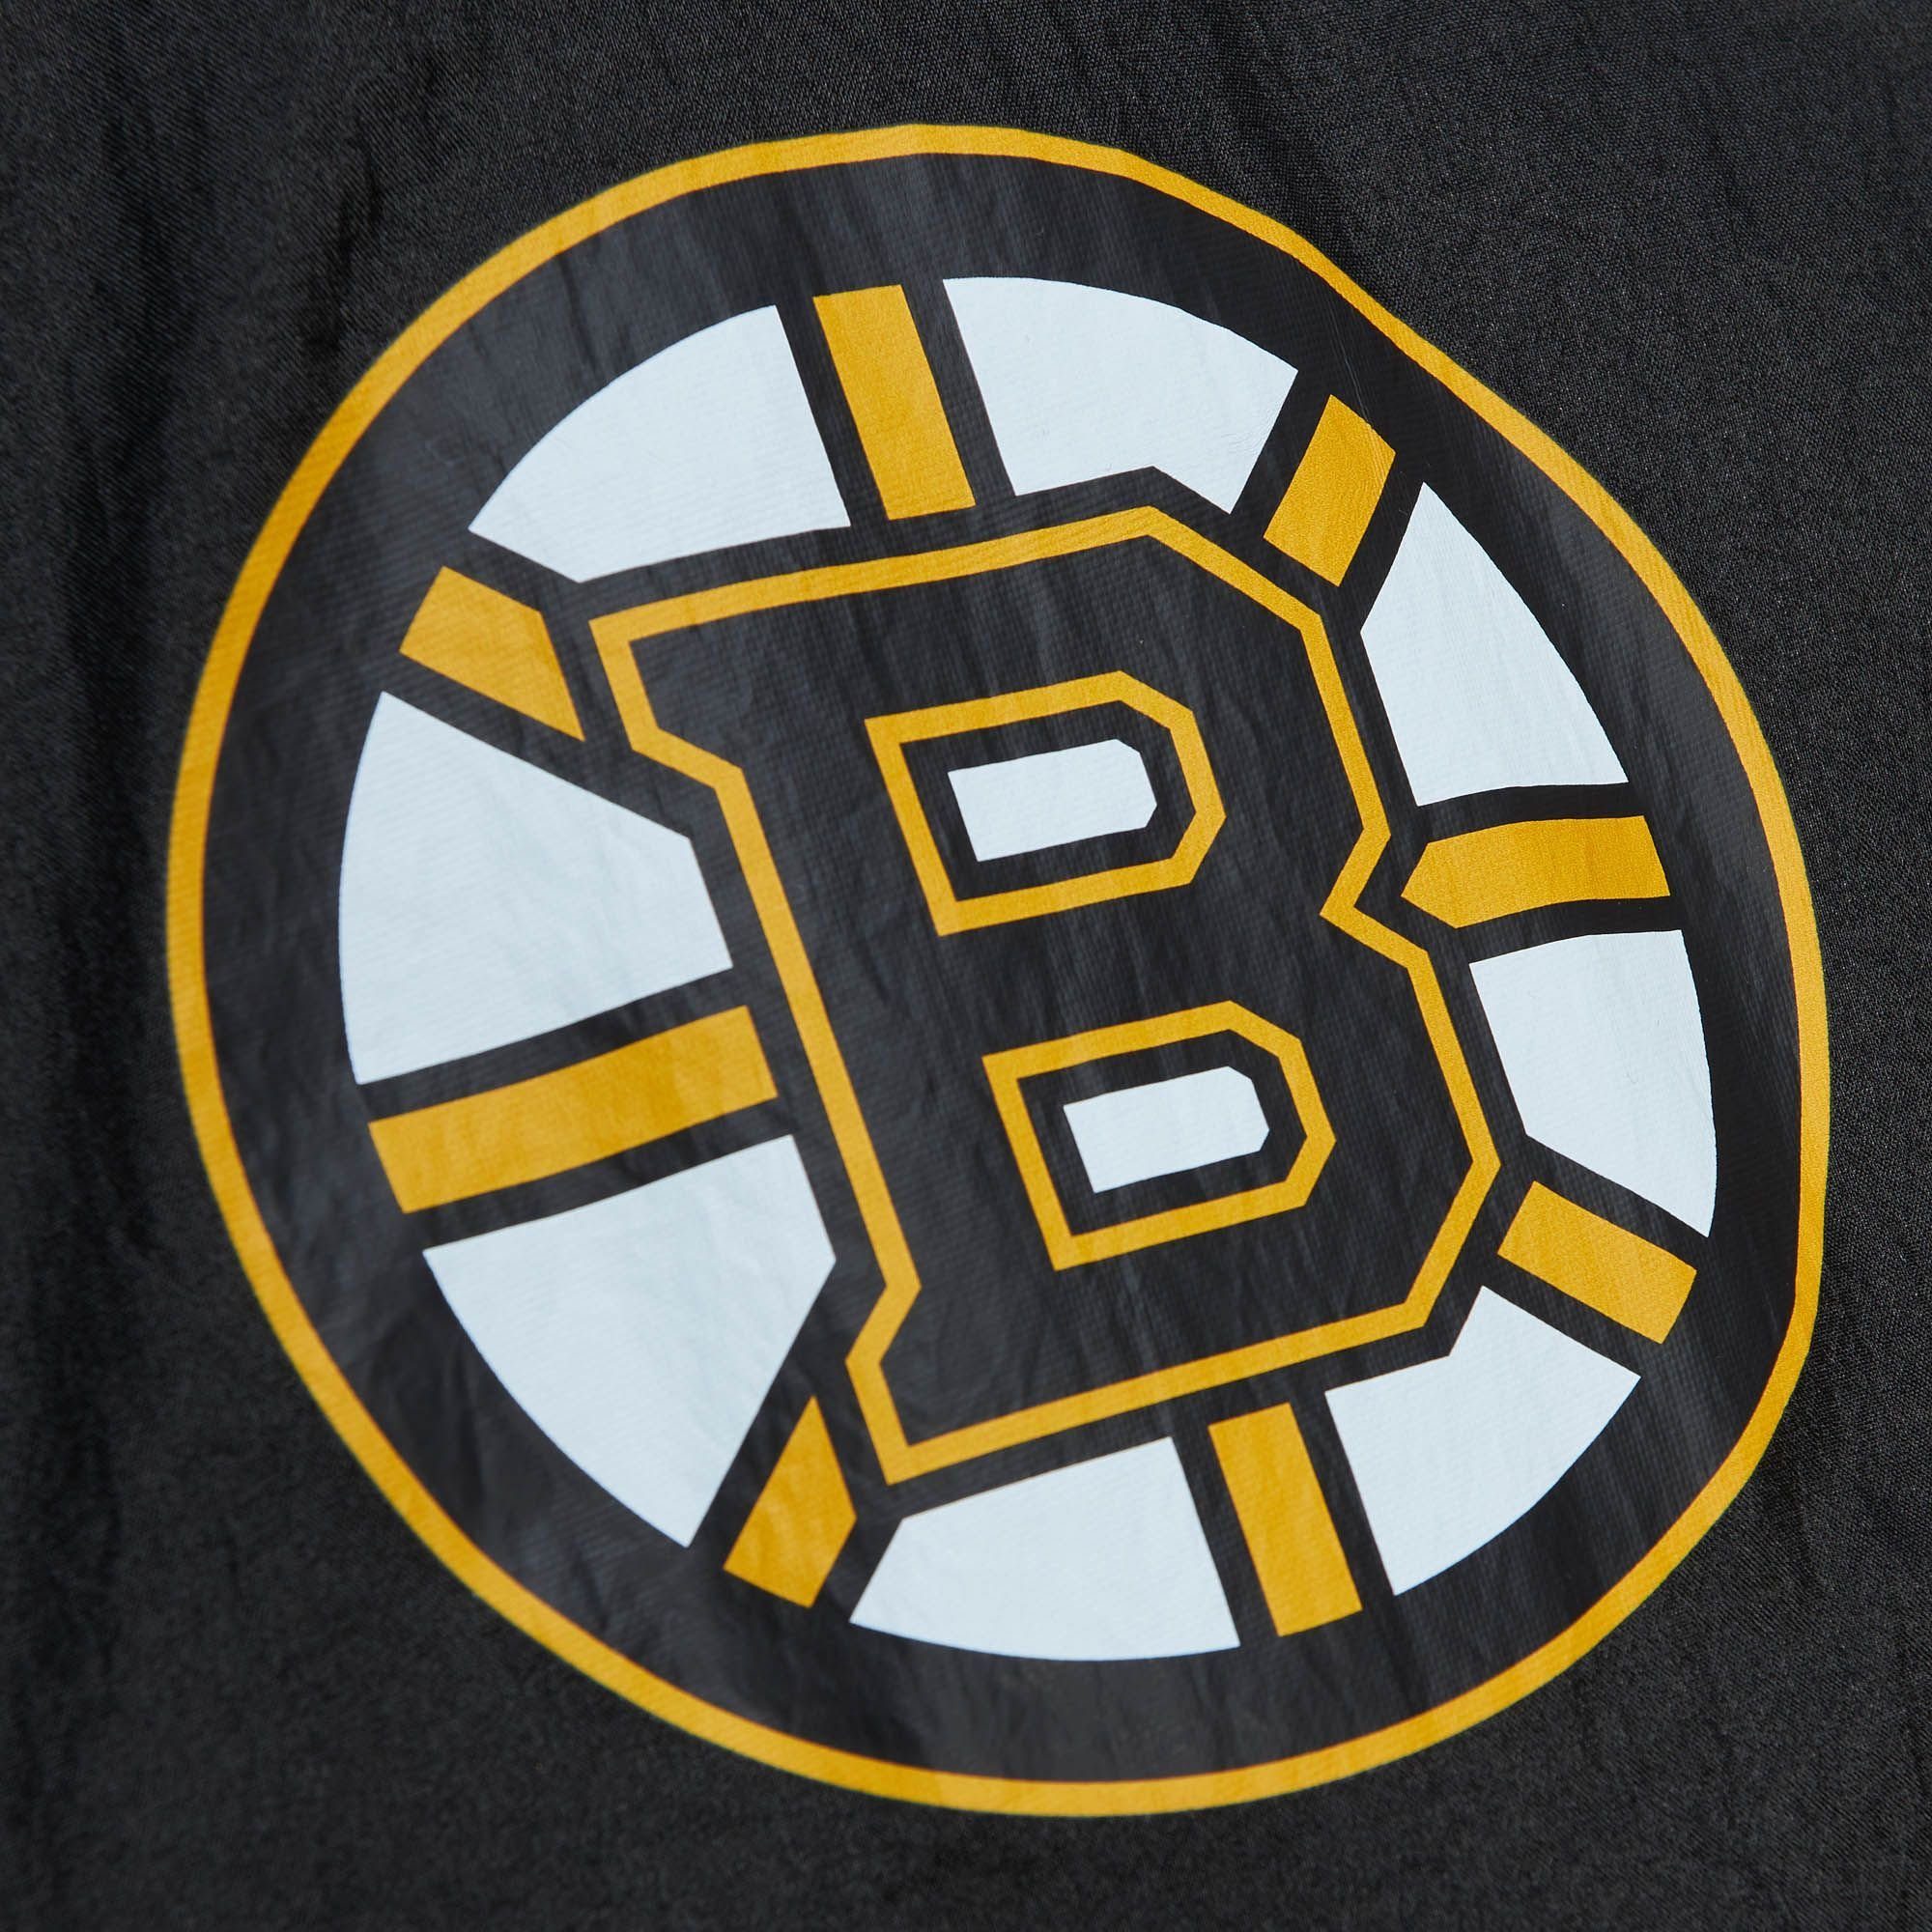 Mitchell Anorak & Bruins Windbreaker Ness Boston ORIGINS